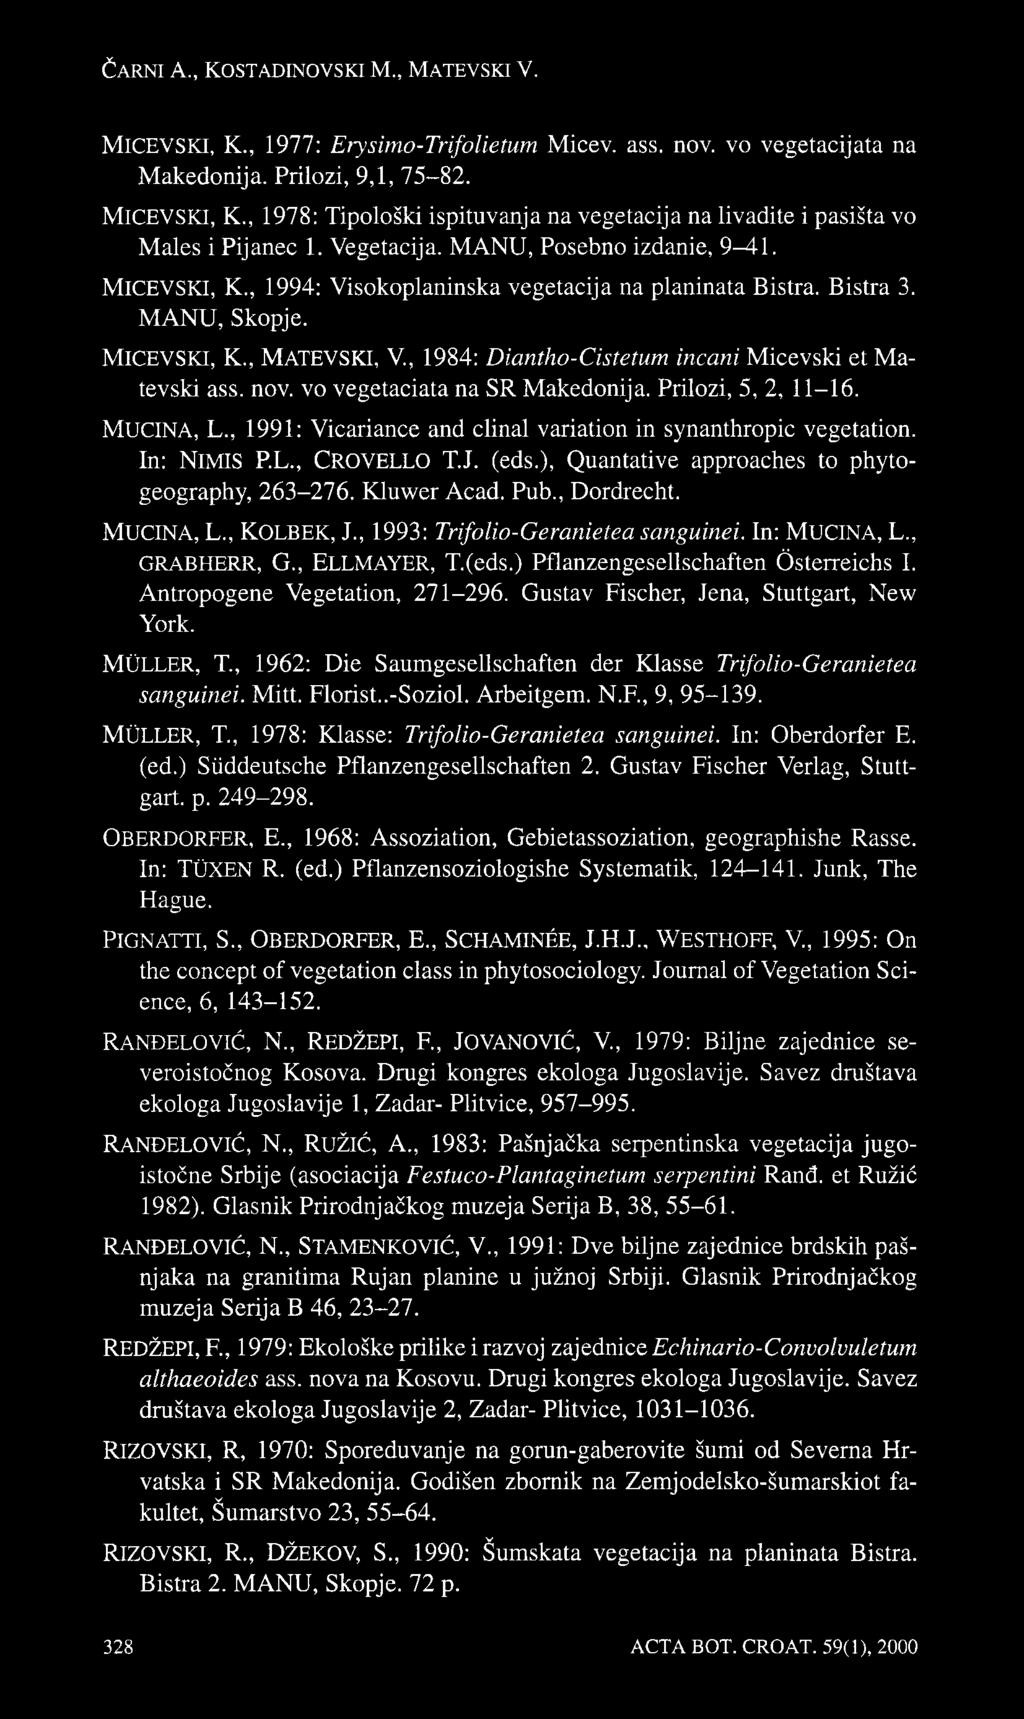 nov. vo vegetaciata na SR Makedonija. Prilozi, 5, 2, 11-16. MUCINA, L., 1991: Vicariance and clinal variation in synanthropic vegetation. In: NlMIS P.L., CROVELLO T.J. (eds.